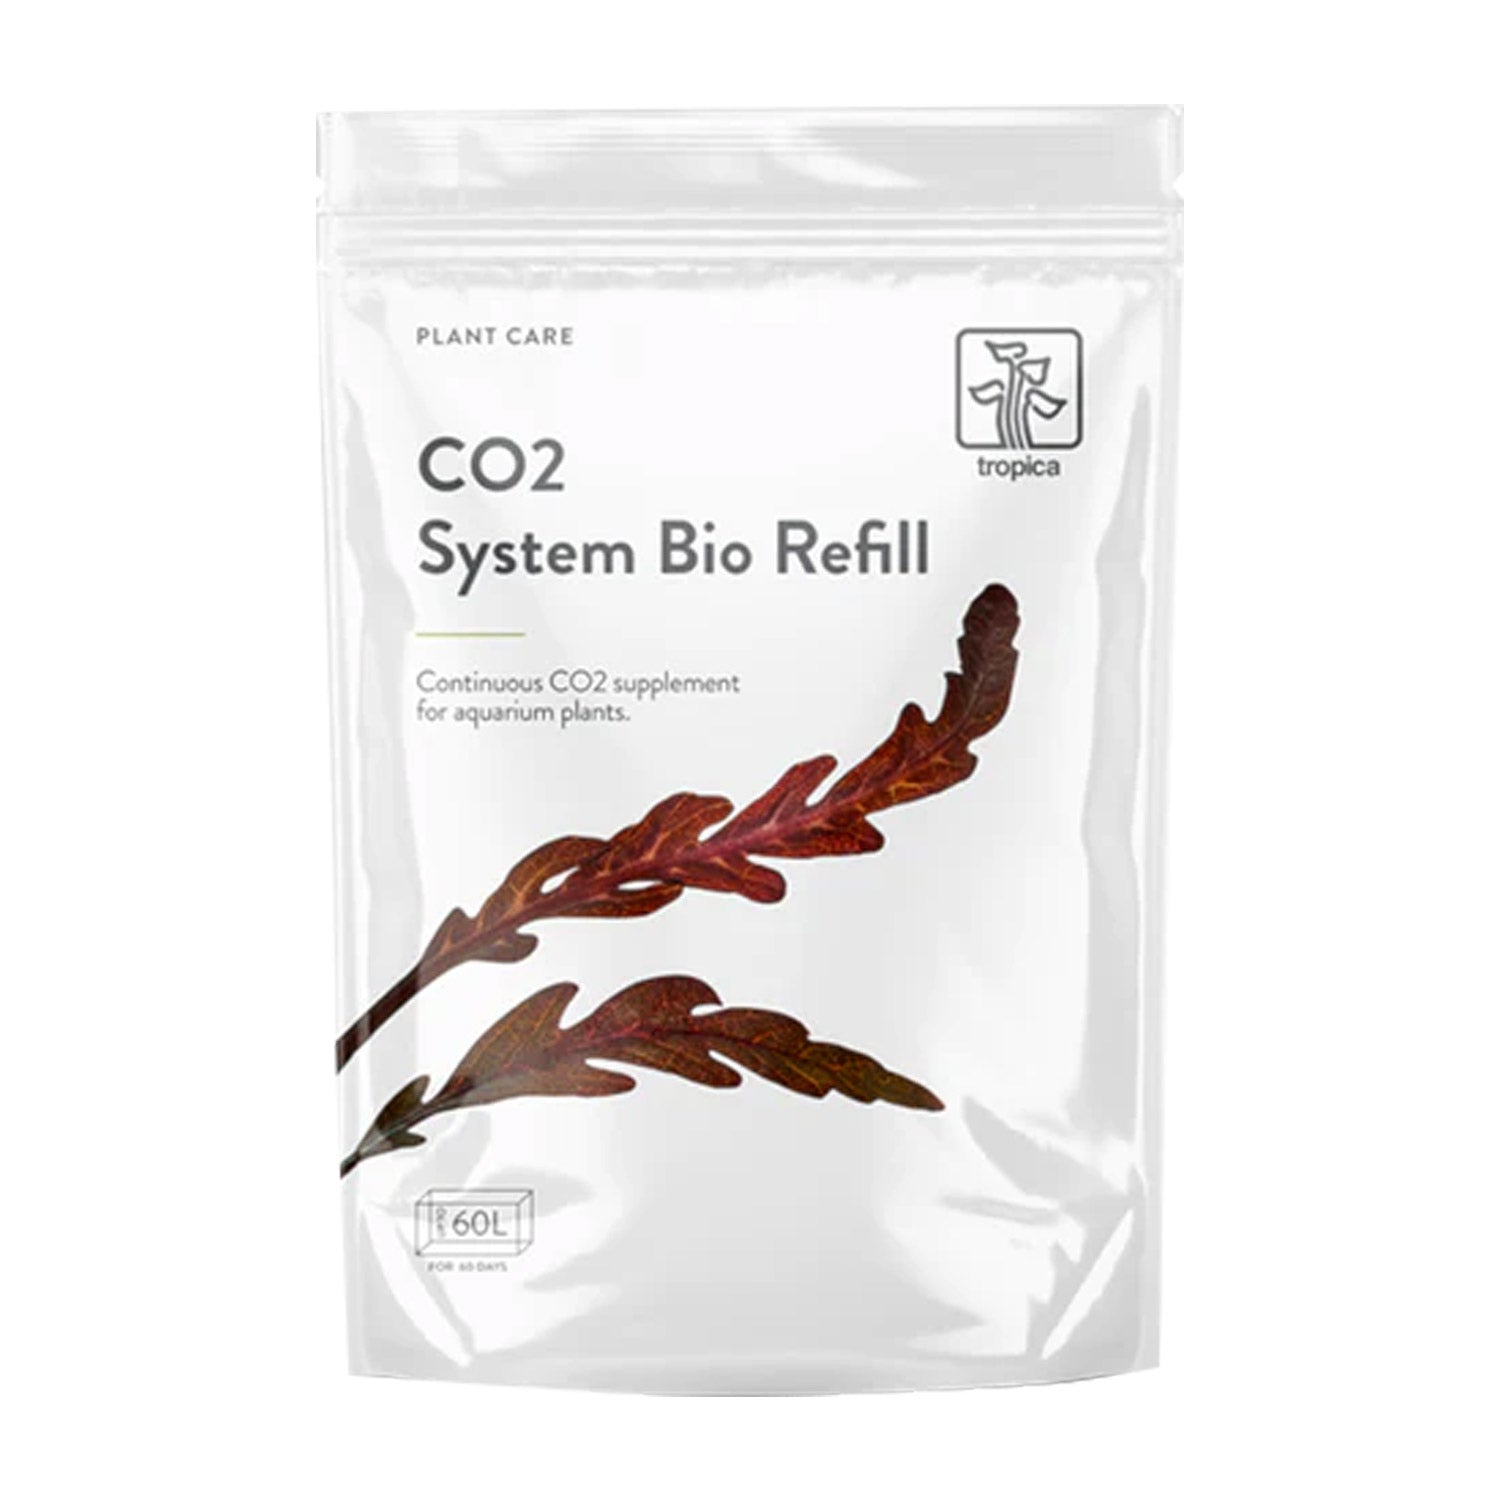 CO2 System Bio Refill